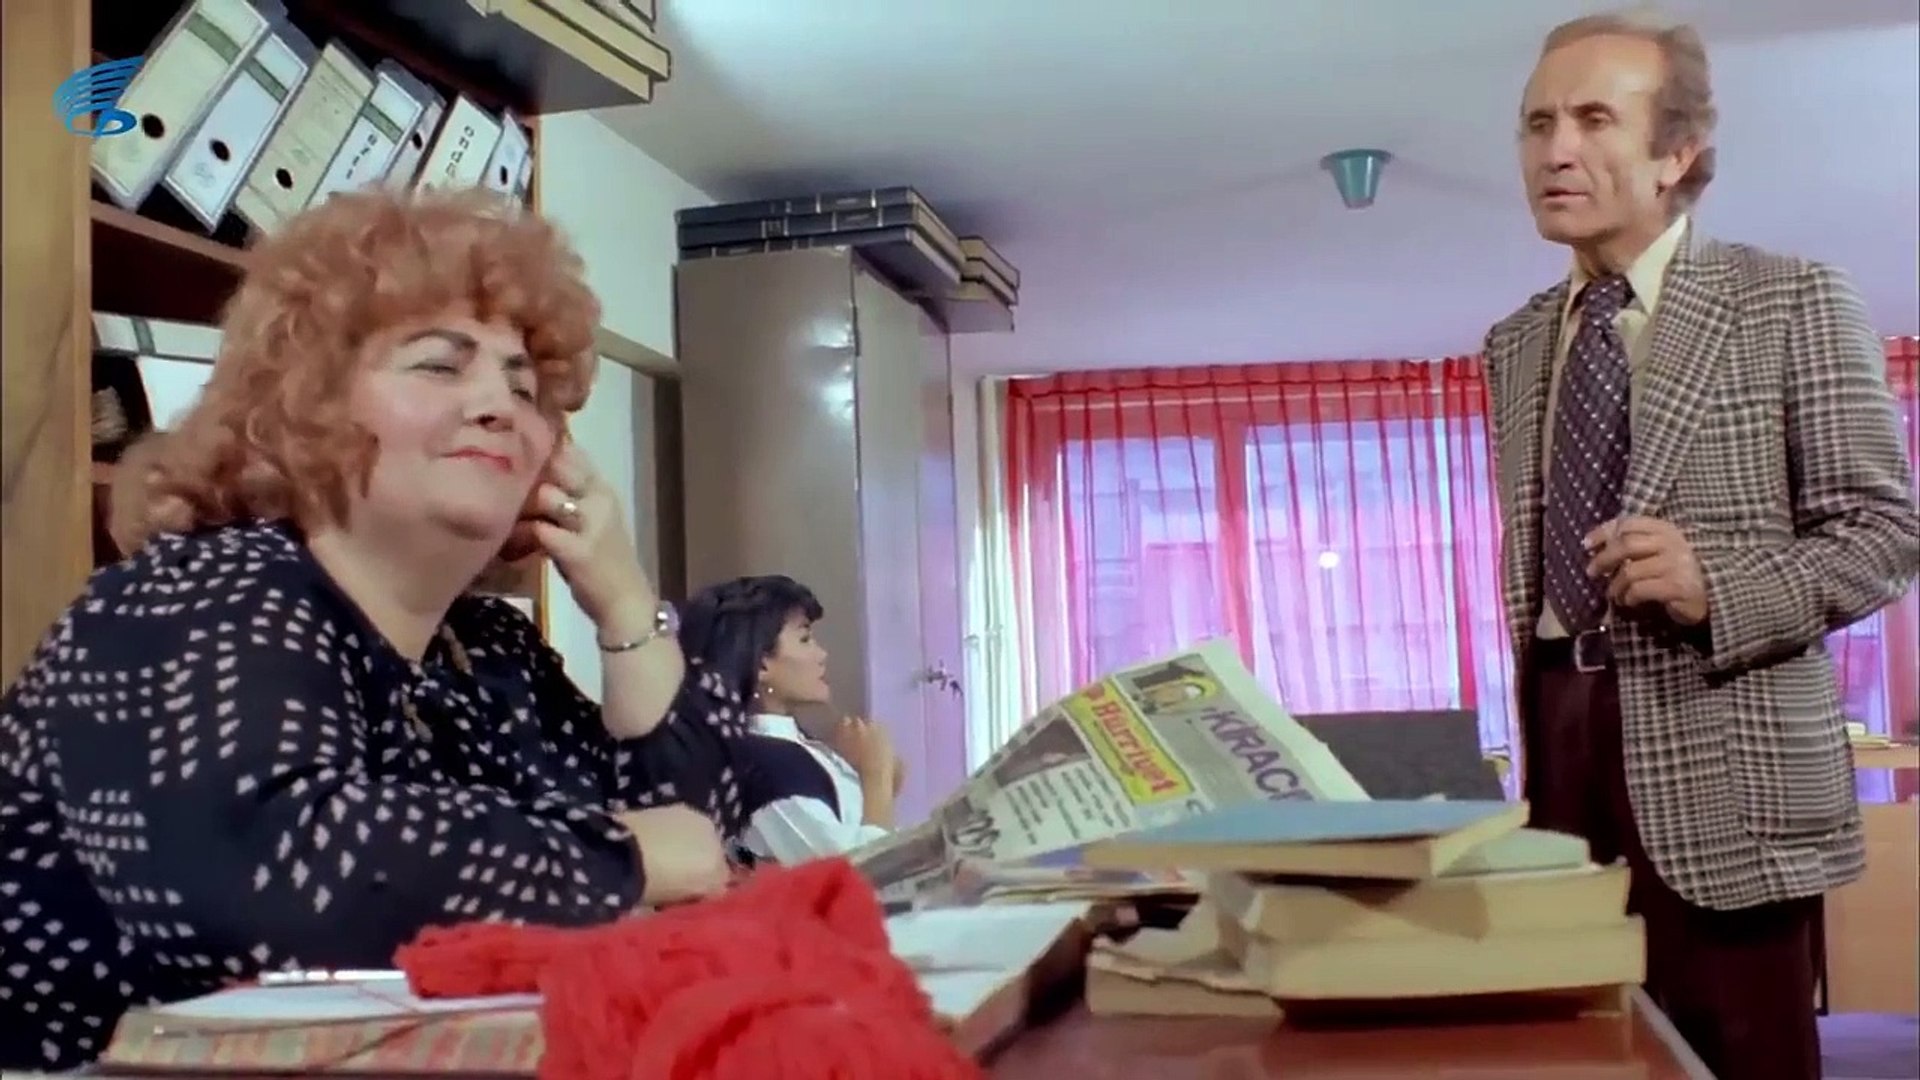 Korkusuz Korkak (1979) - Kemal Sunal - Dailymotion Video